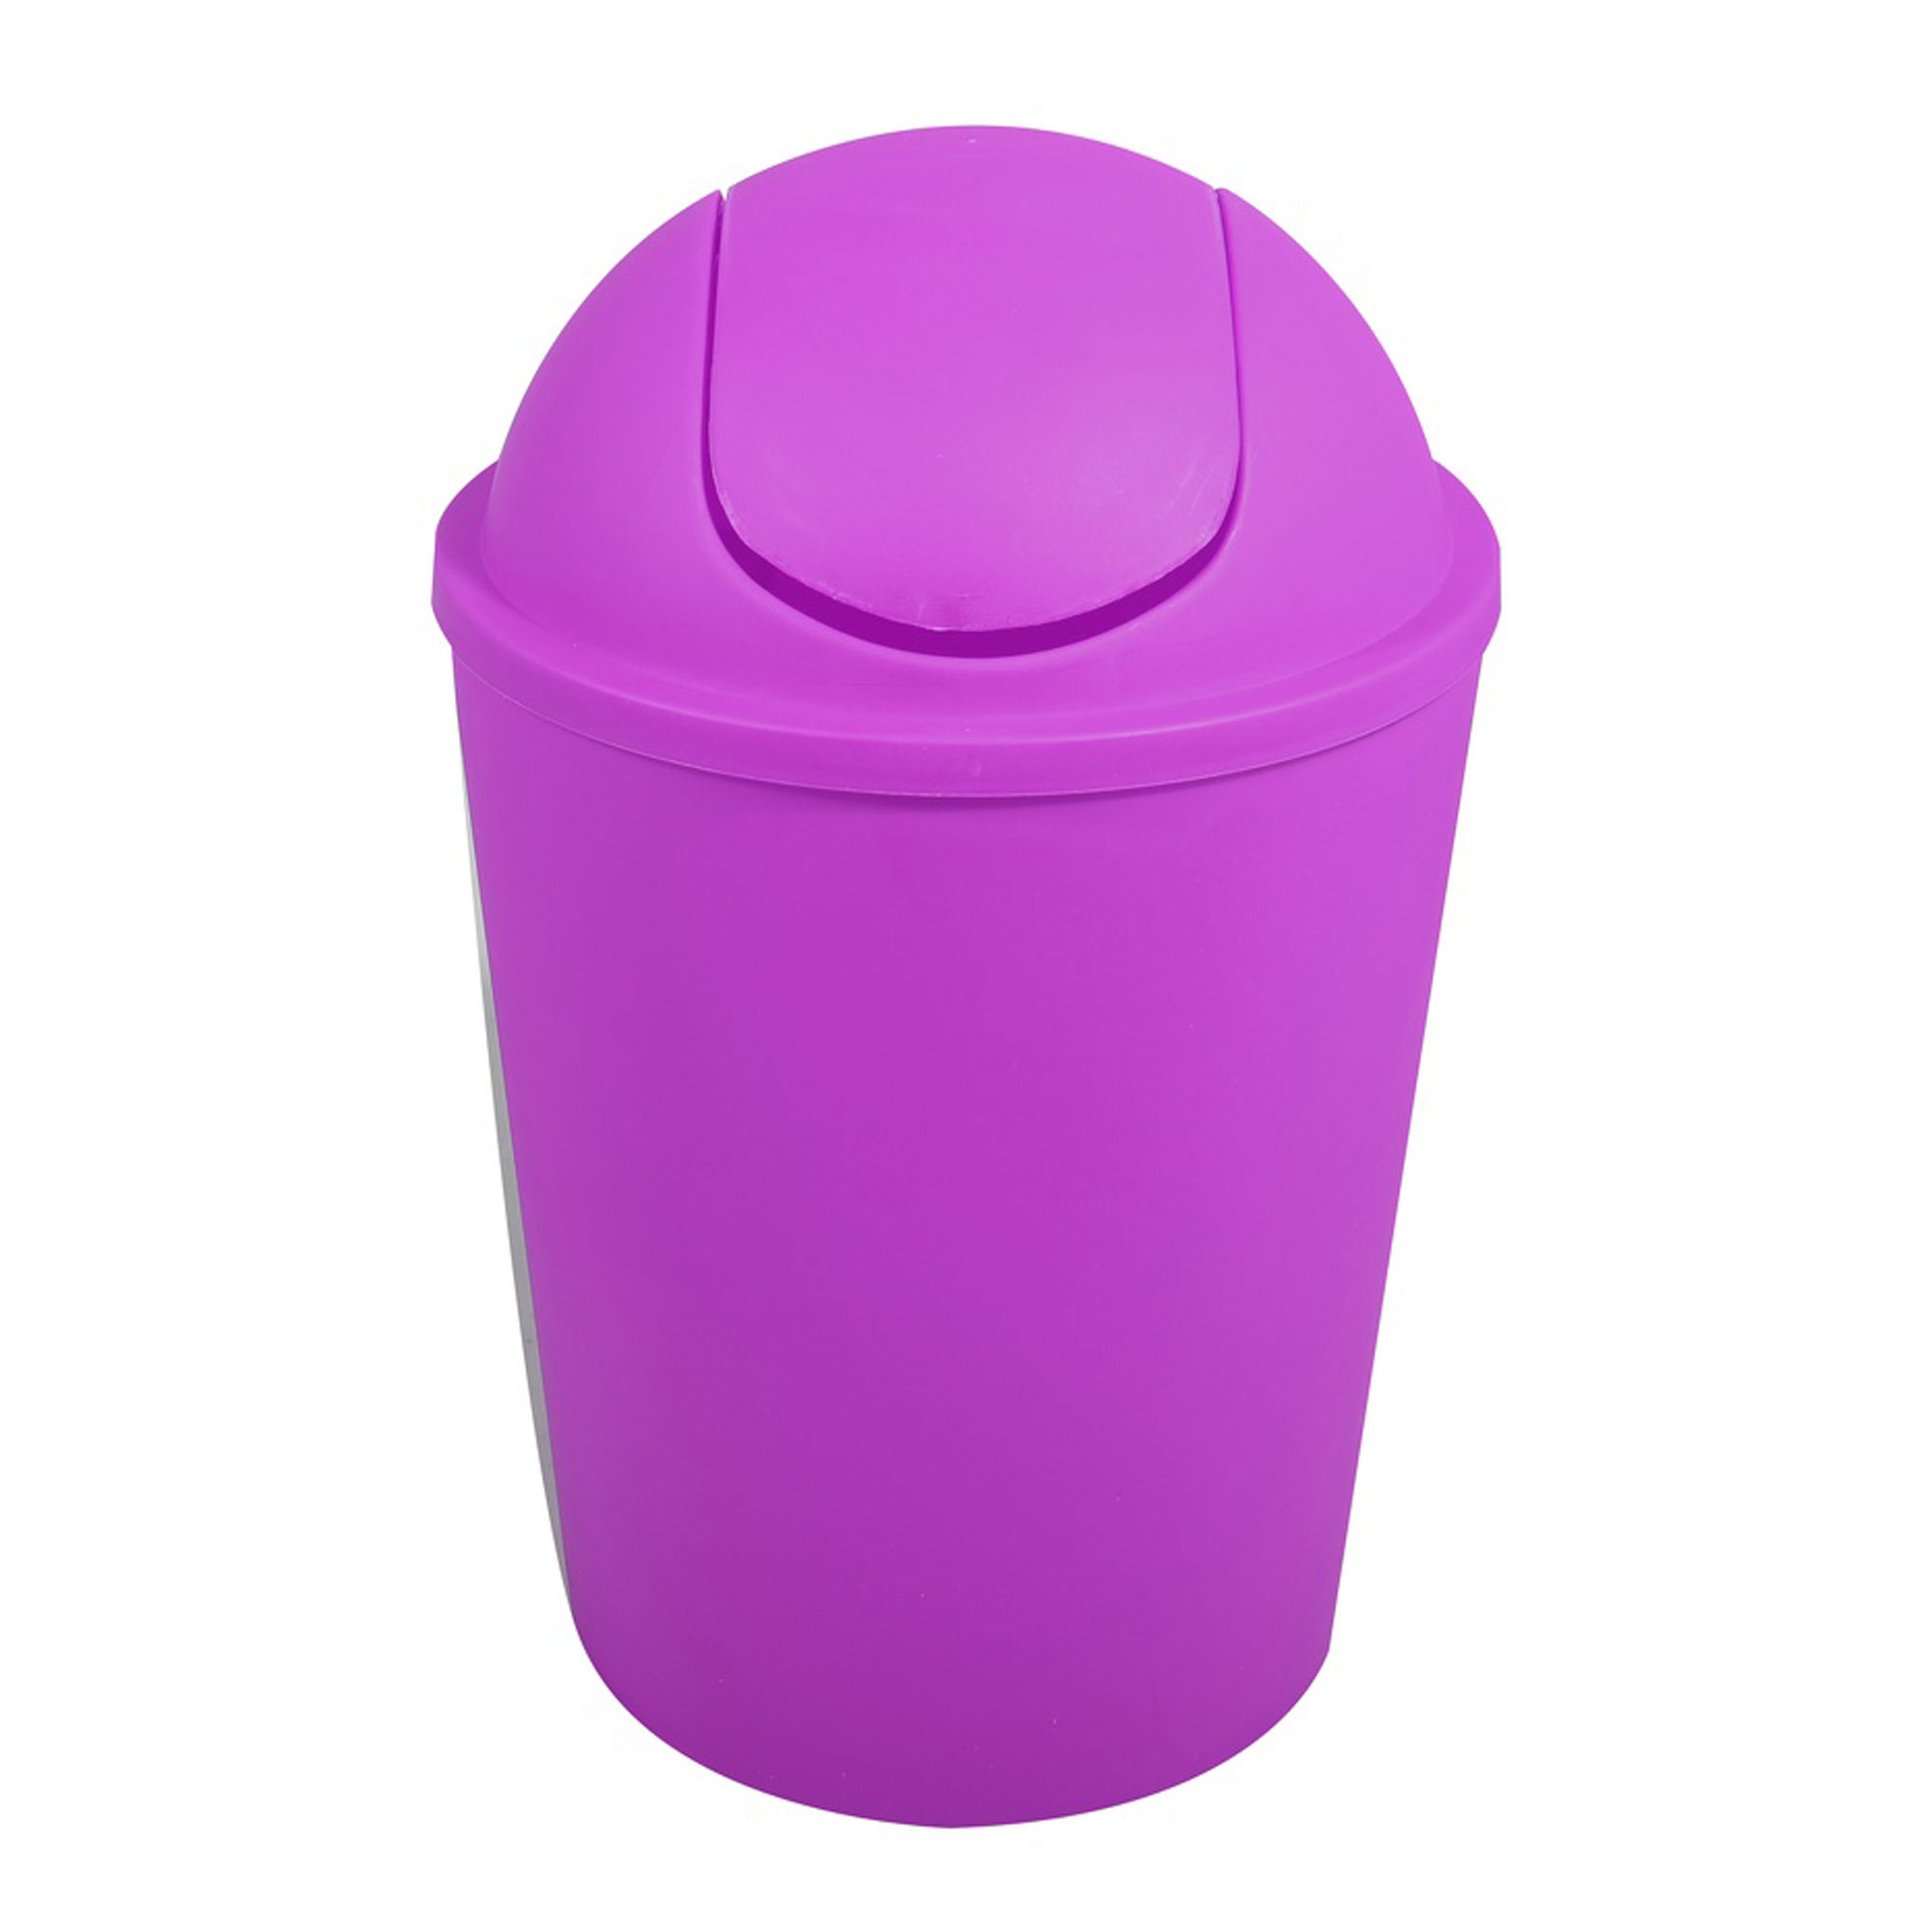 MSV - MSV Cubo de Basura AKO 5,5L con Tapa Abatible Violeta - Diseño Elegante y Ecológico